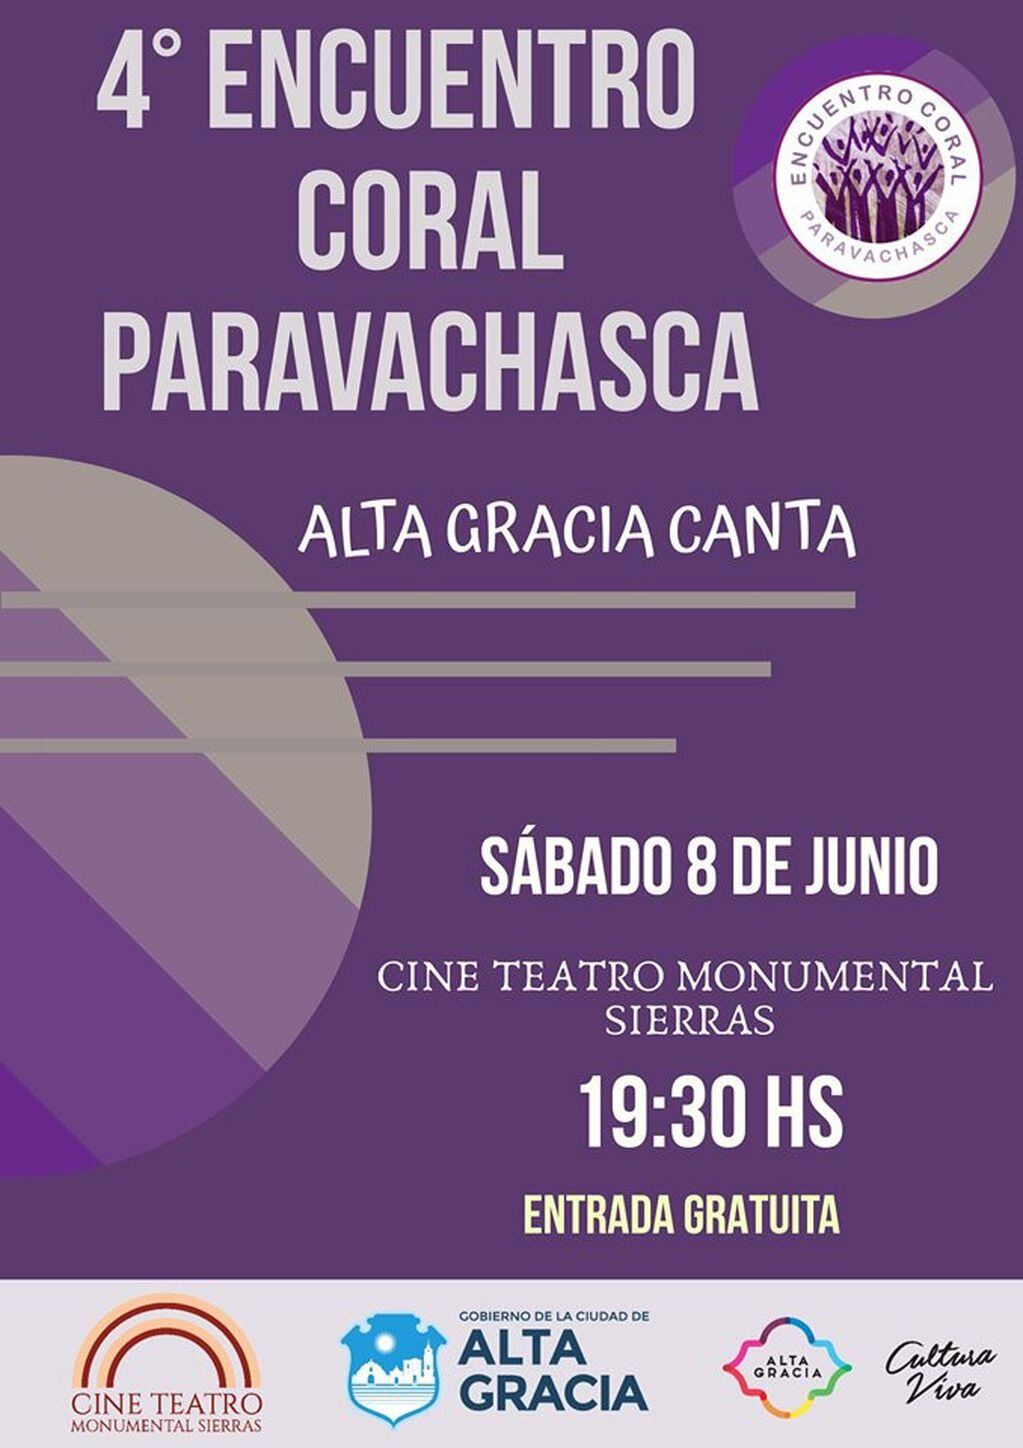 Invitación a la cuarta edición del Encuentro Coral Paravachasca, Alta Gracia.